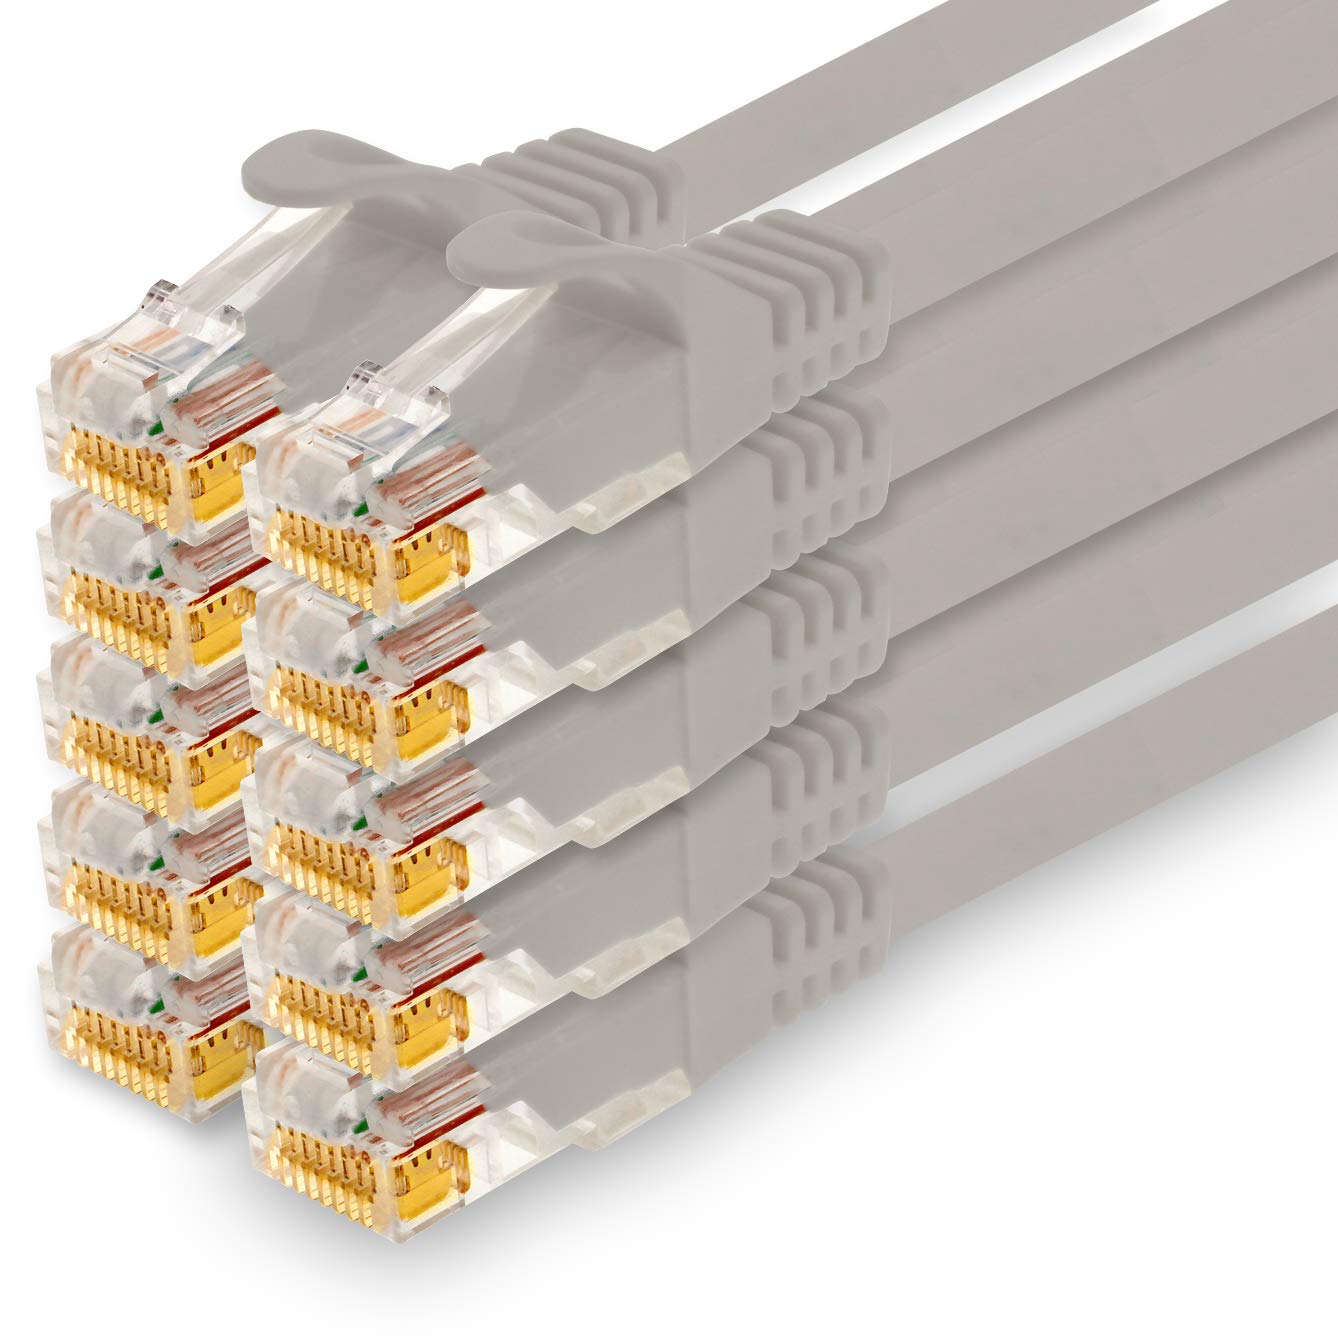 1CONN - 1,5m Netzwerkkabel, Ethernet, Lan & Patchkabel für maximale Internet Geschwindigkeit & verbindet alle Geräte mit RJ 45 Buchse grau - 10 Stück